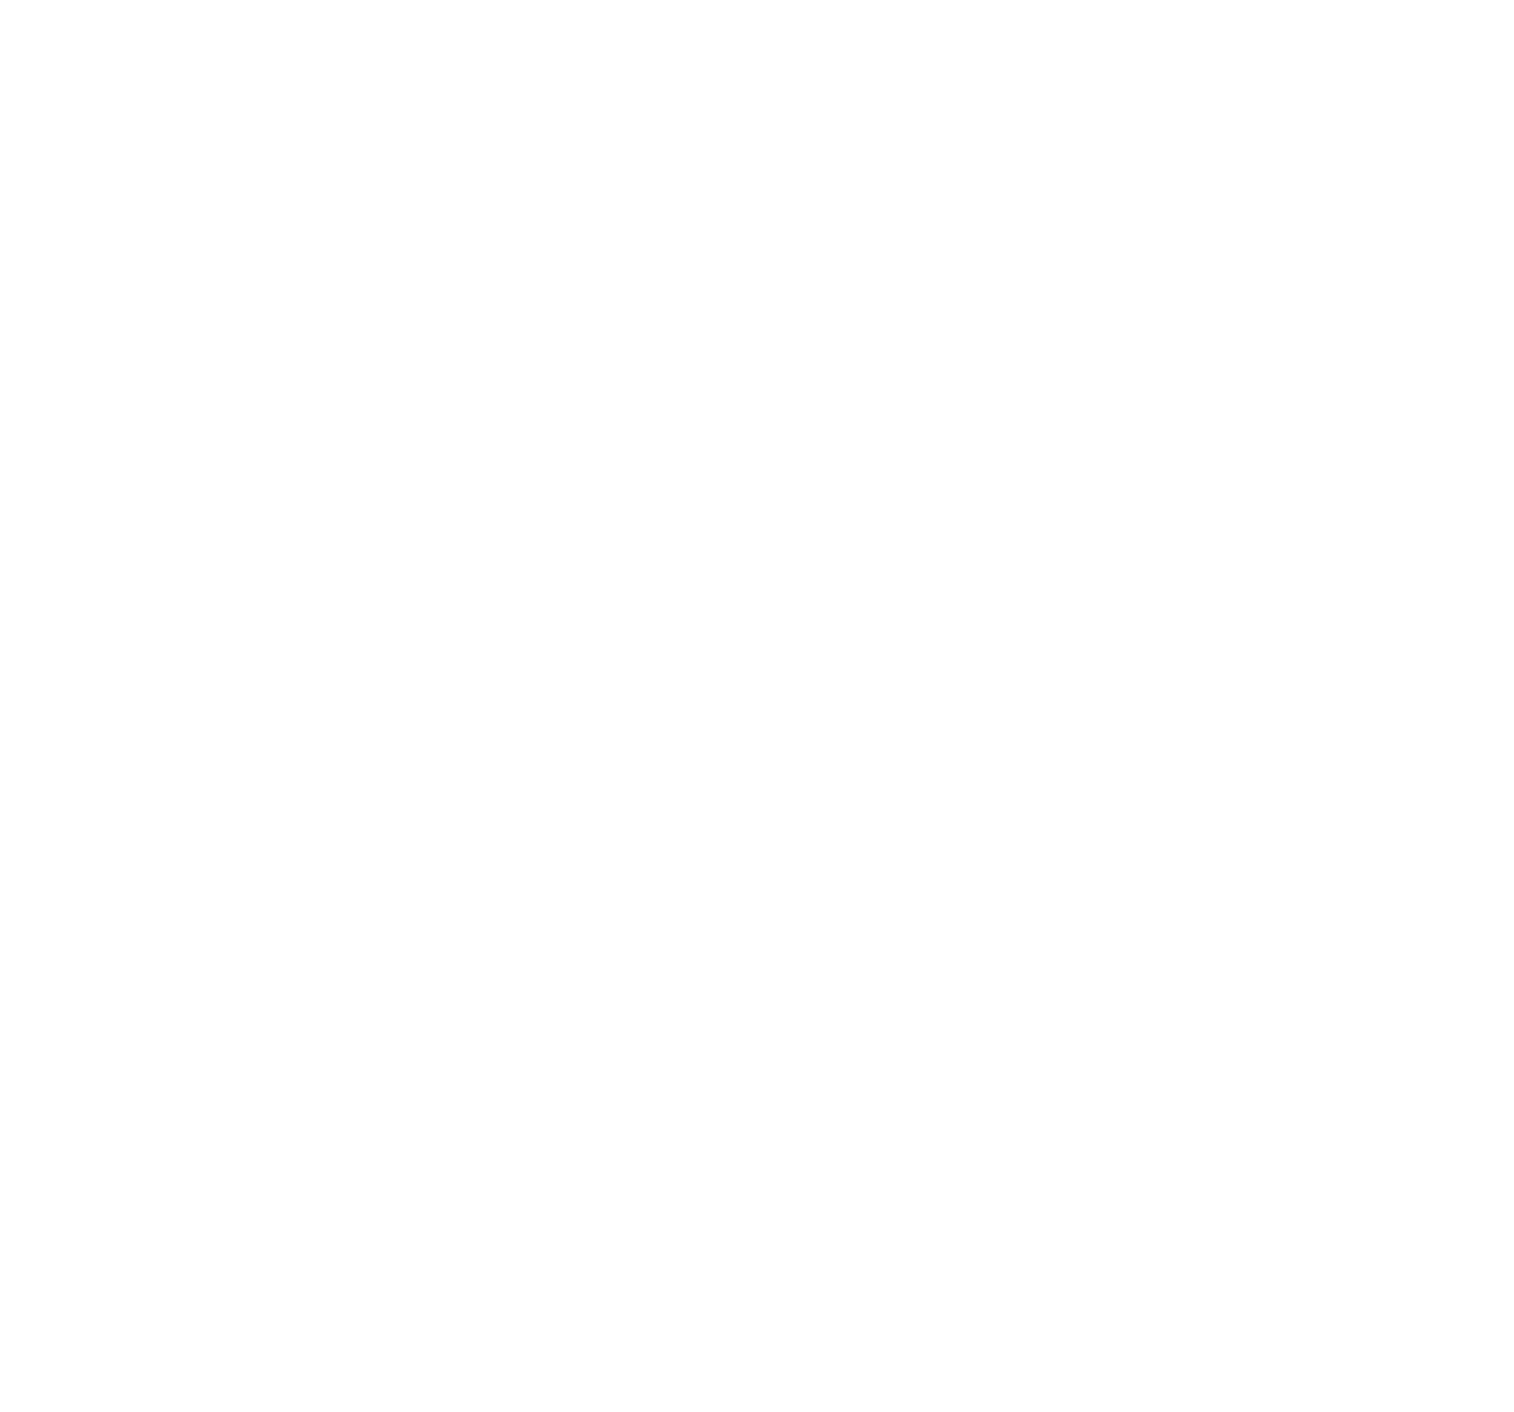 WashTec AG logo pour fonds sombres (PNG transparent)